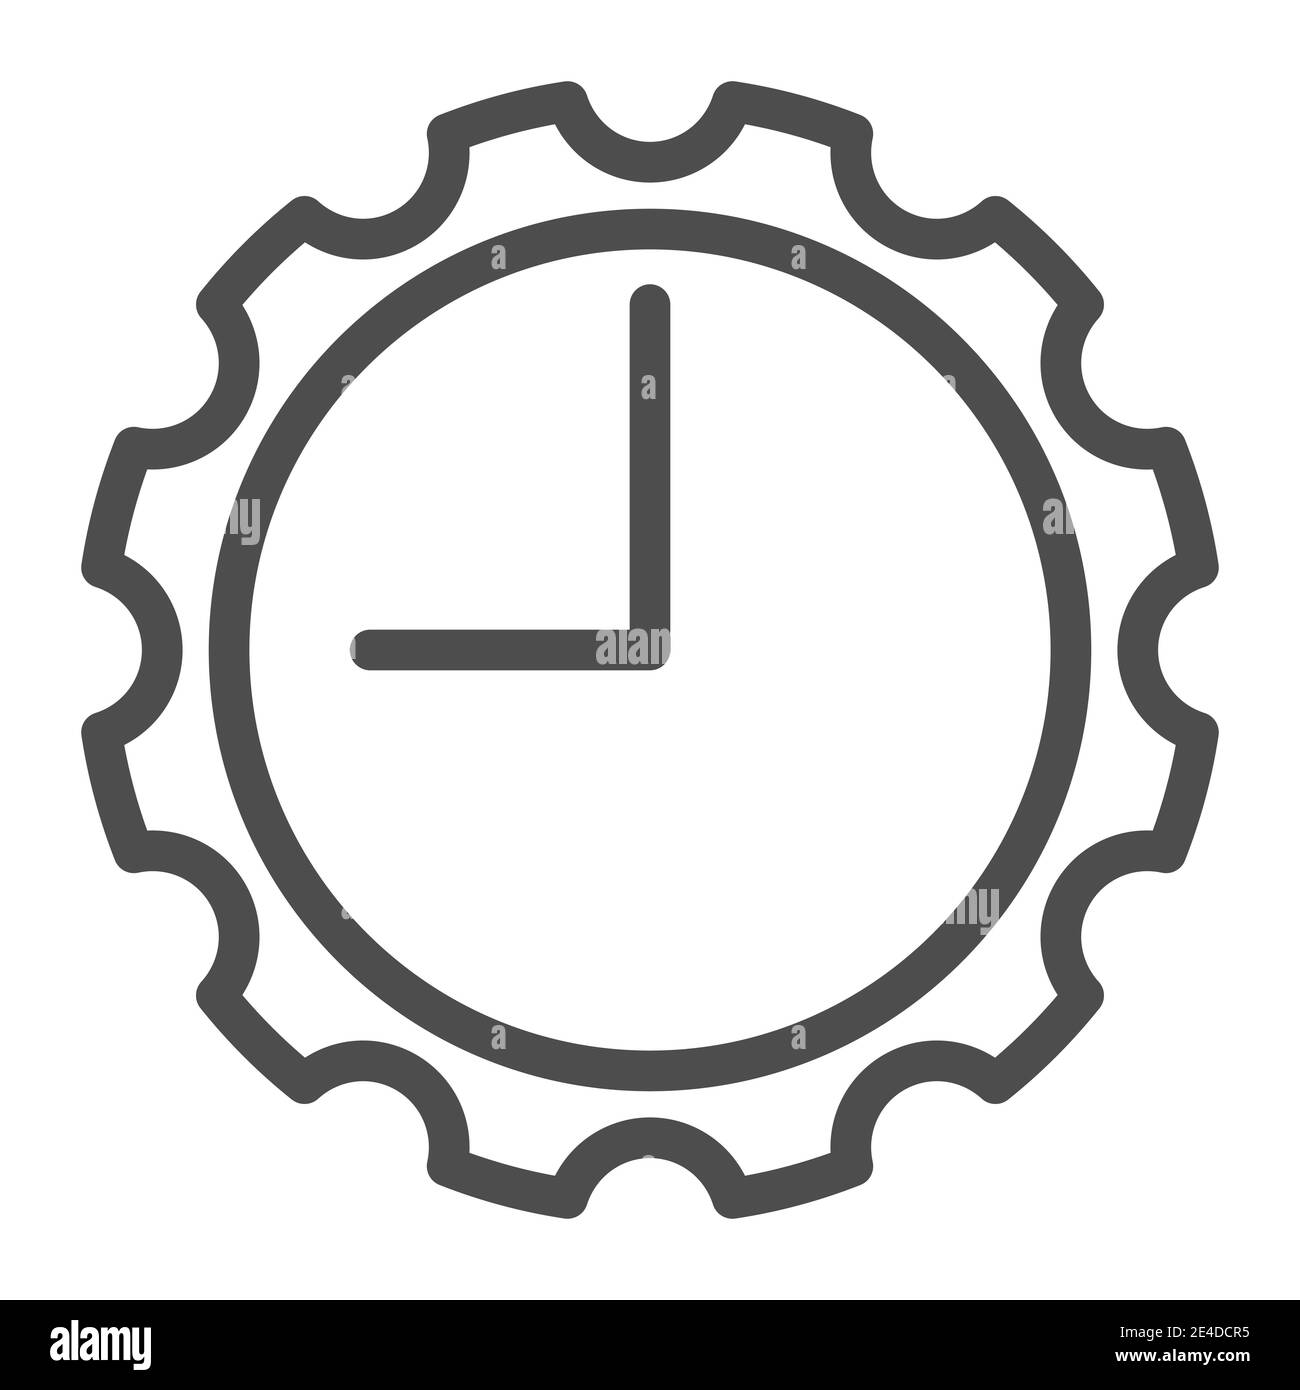 Uhr mit Zahnradsymbol. Uhr mit Zahnrad Vektor-Illustration isoliert auf weiß. Mechanische Uhr Umriss Stil Design, für Web und App entwickelt Stock Vektor